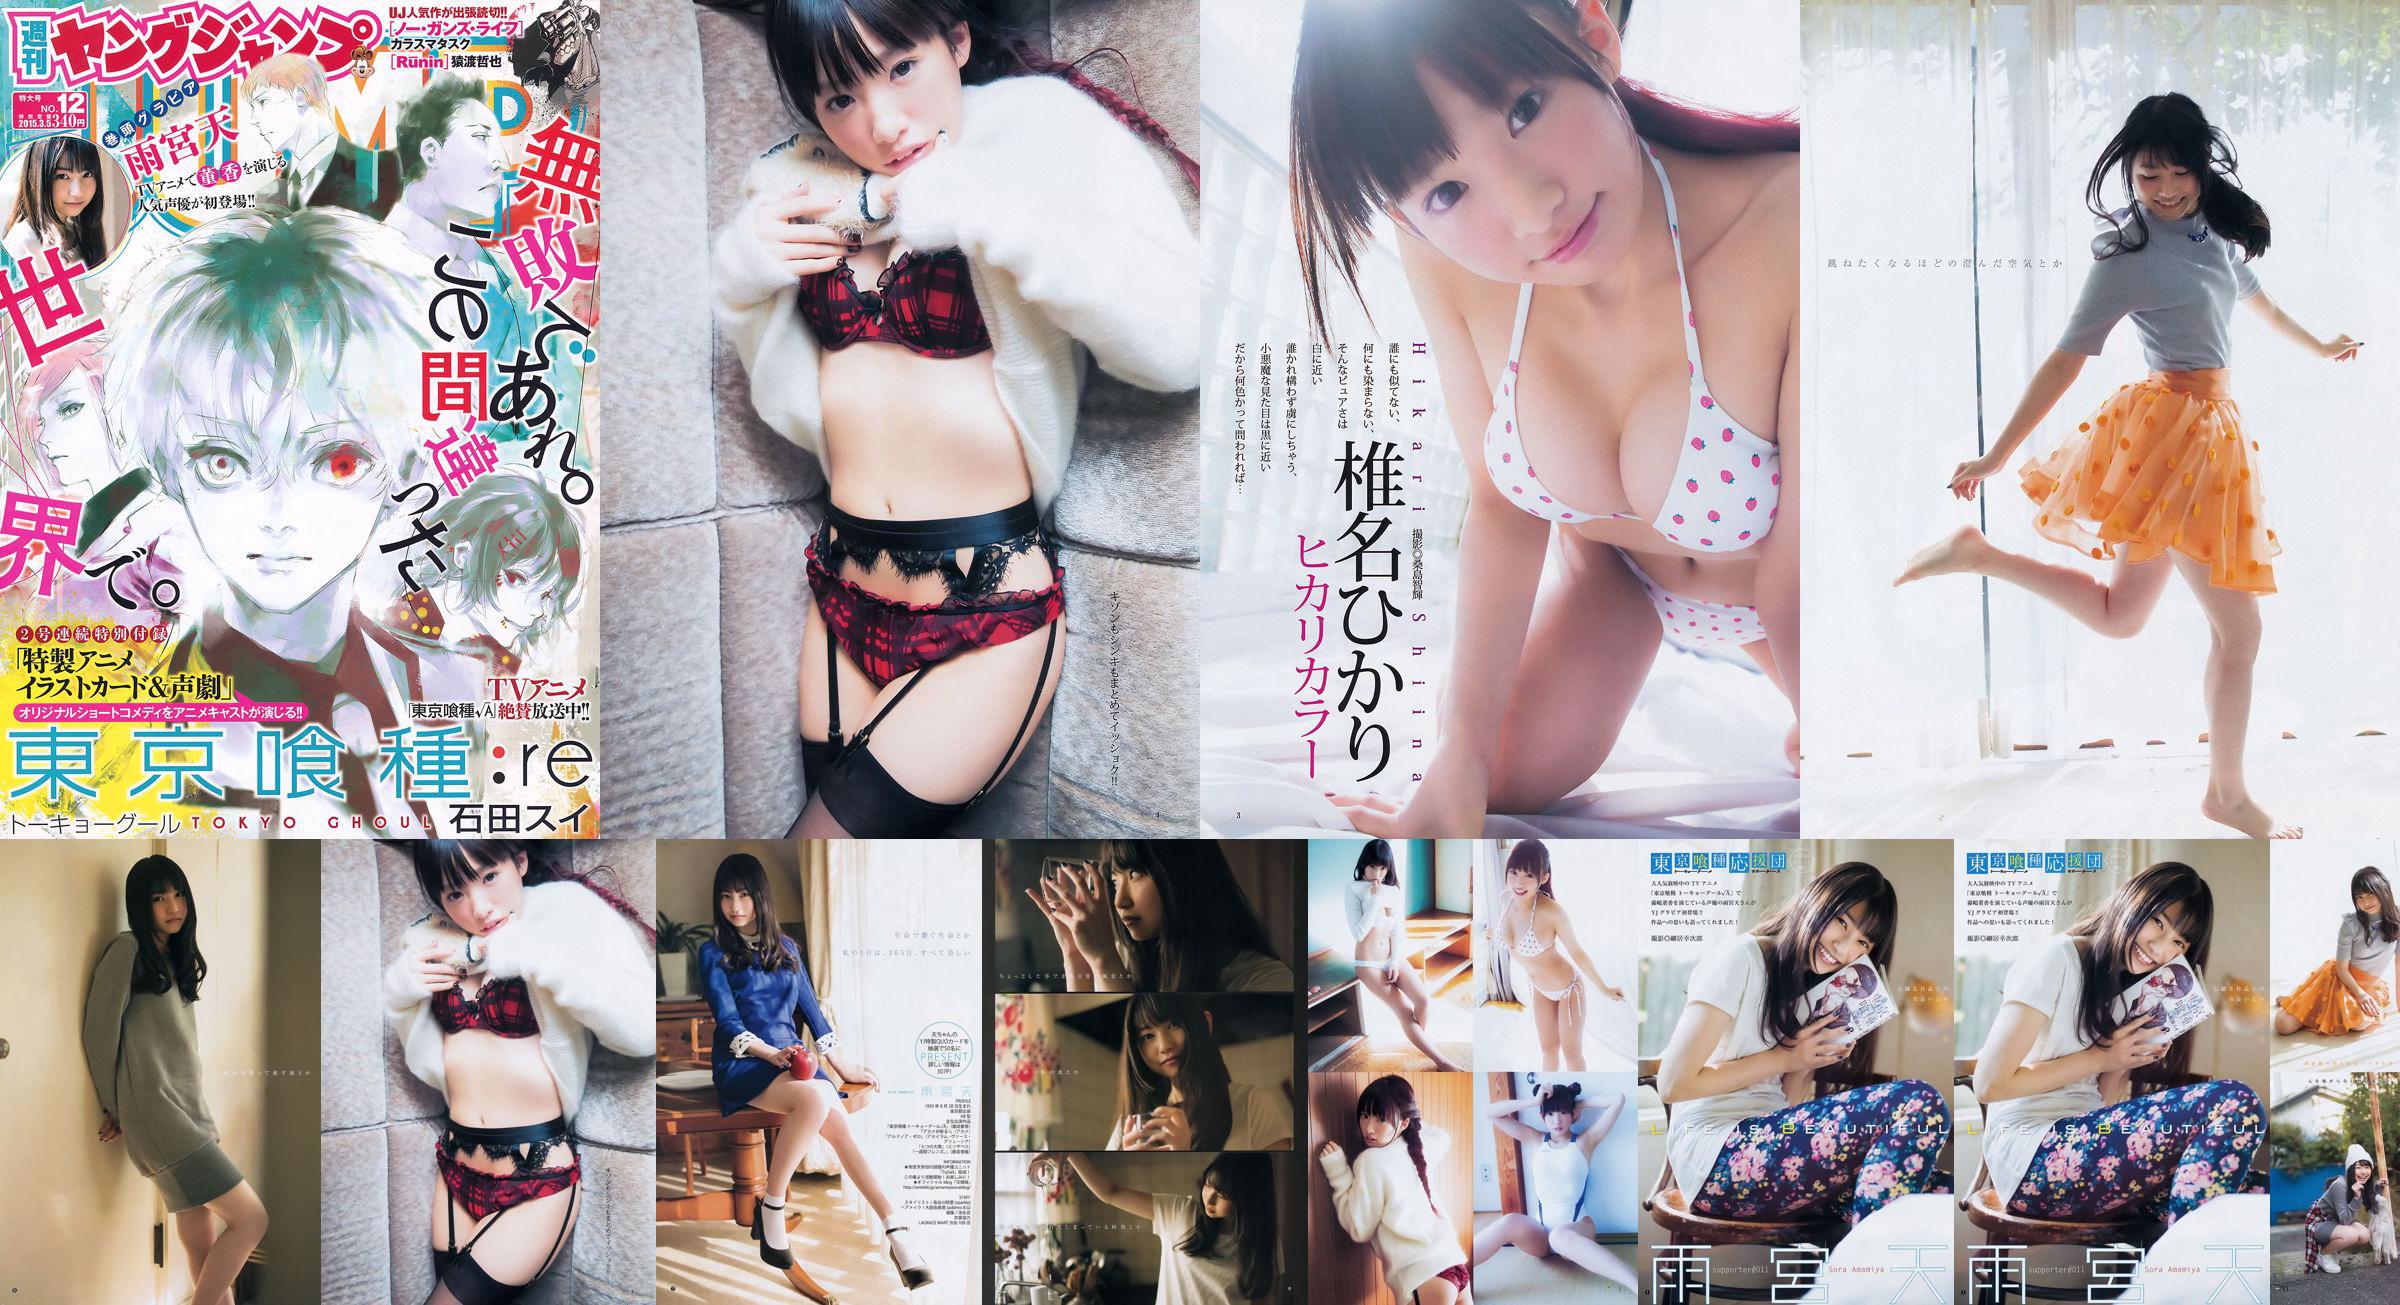 Amamiya Tian Shiina ひかり [Weekly Young Jump] 2015 No.12 Photo Magazine No.90ad7f Página 3